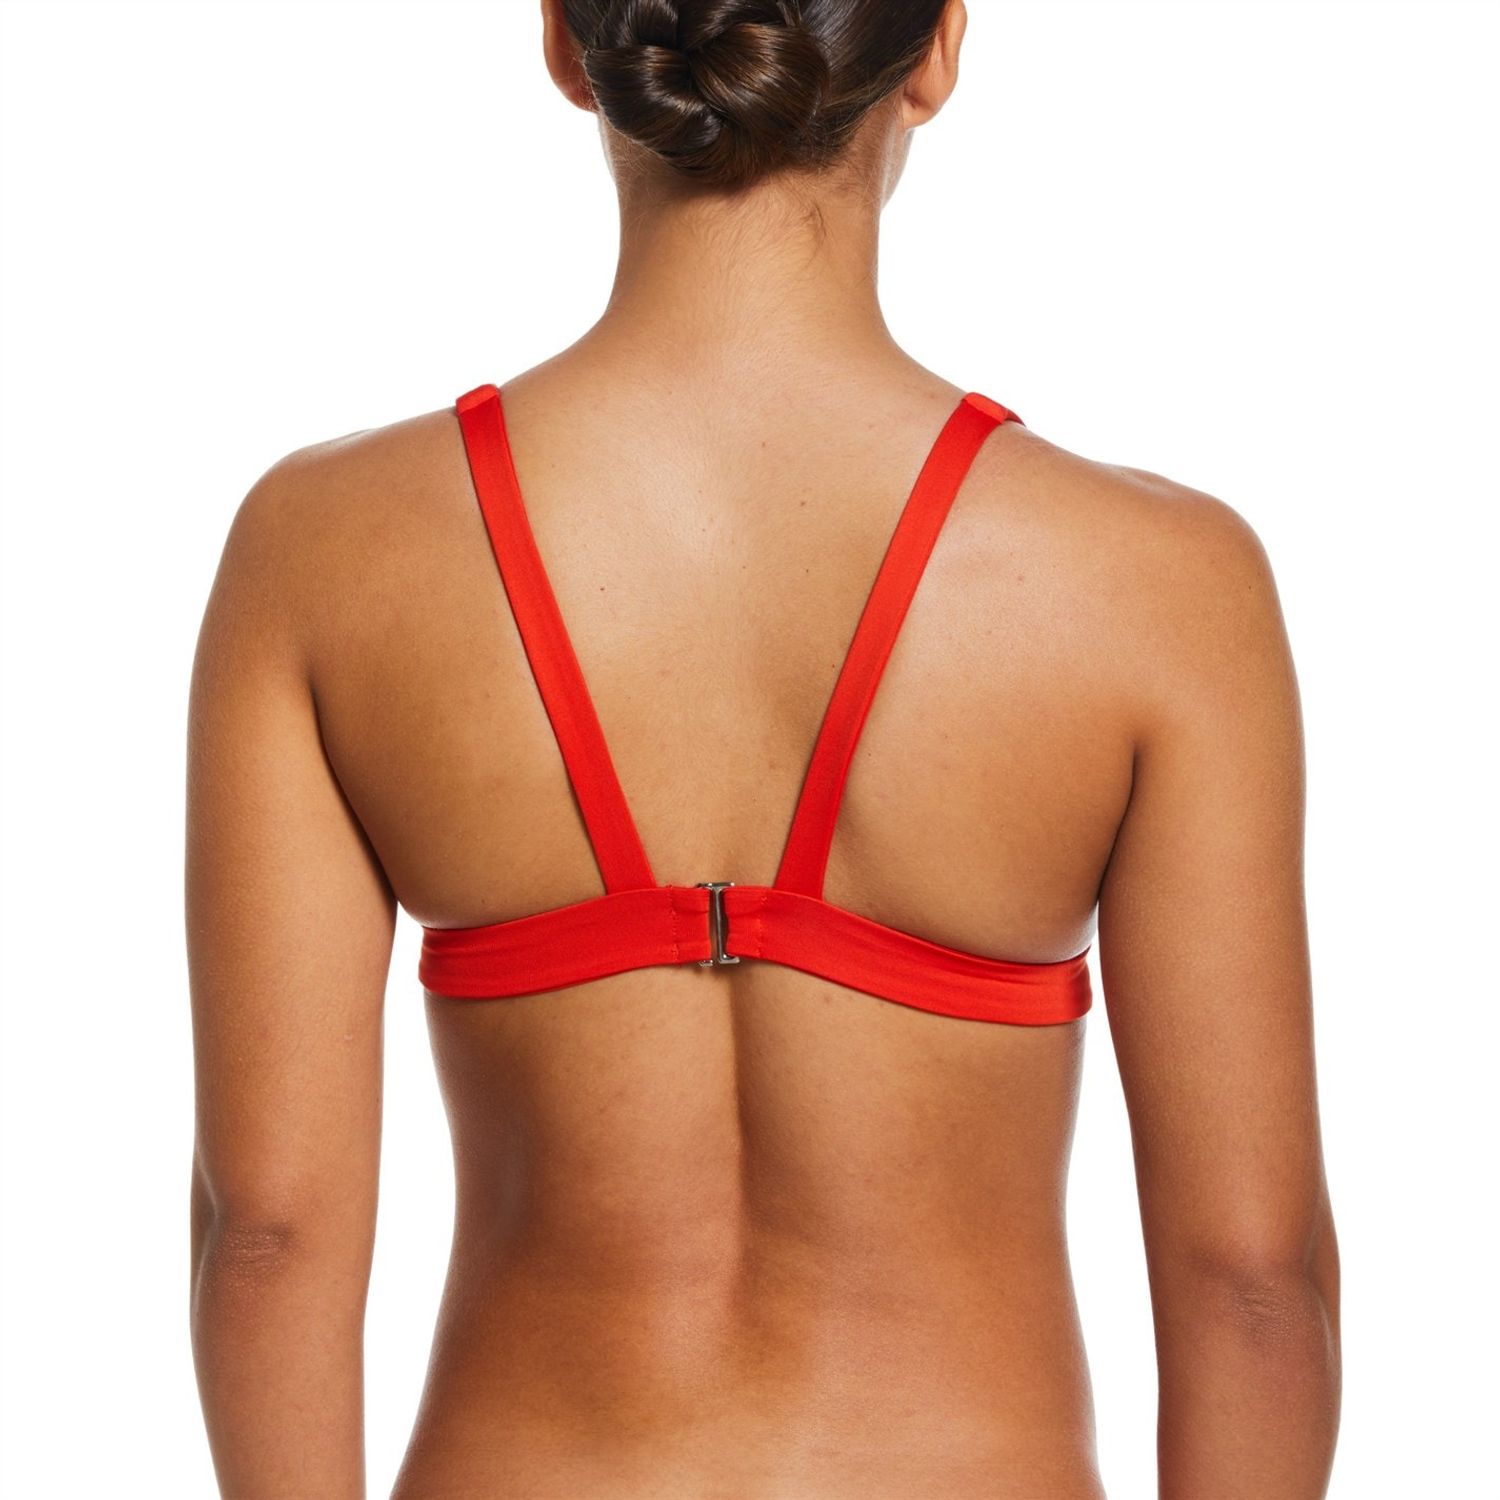 Orange Nike Bralette Bikini Top - Get The Label